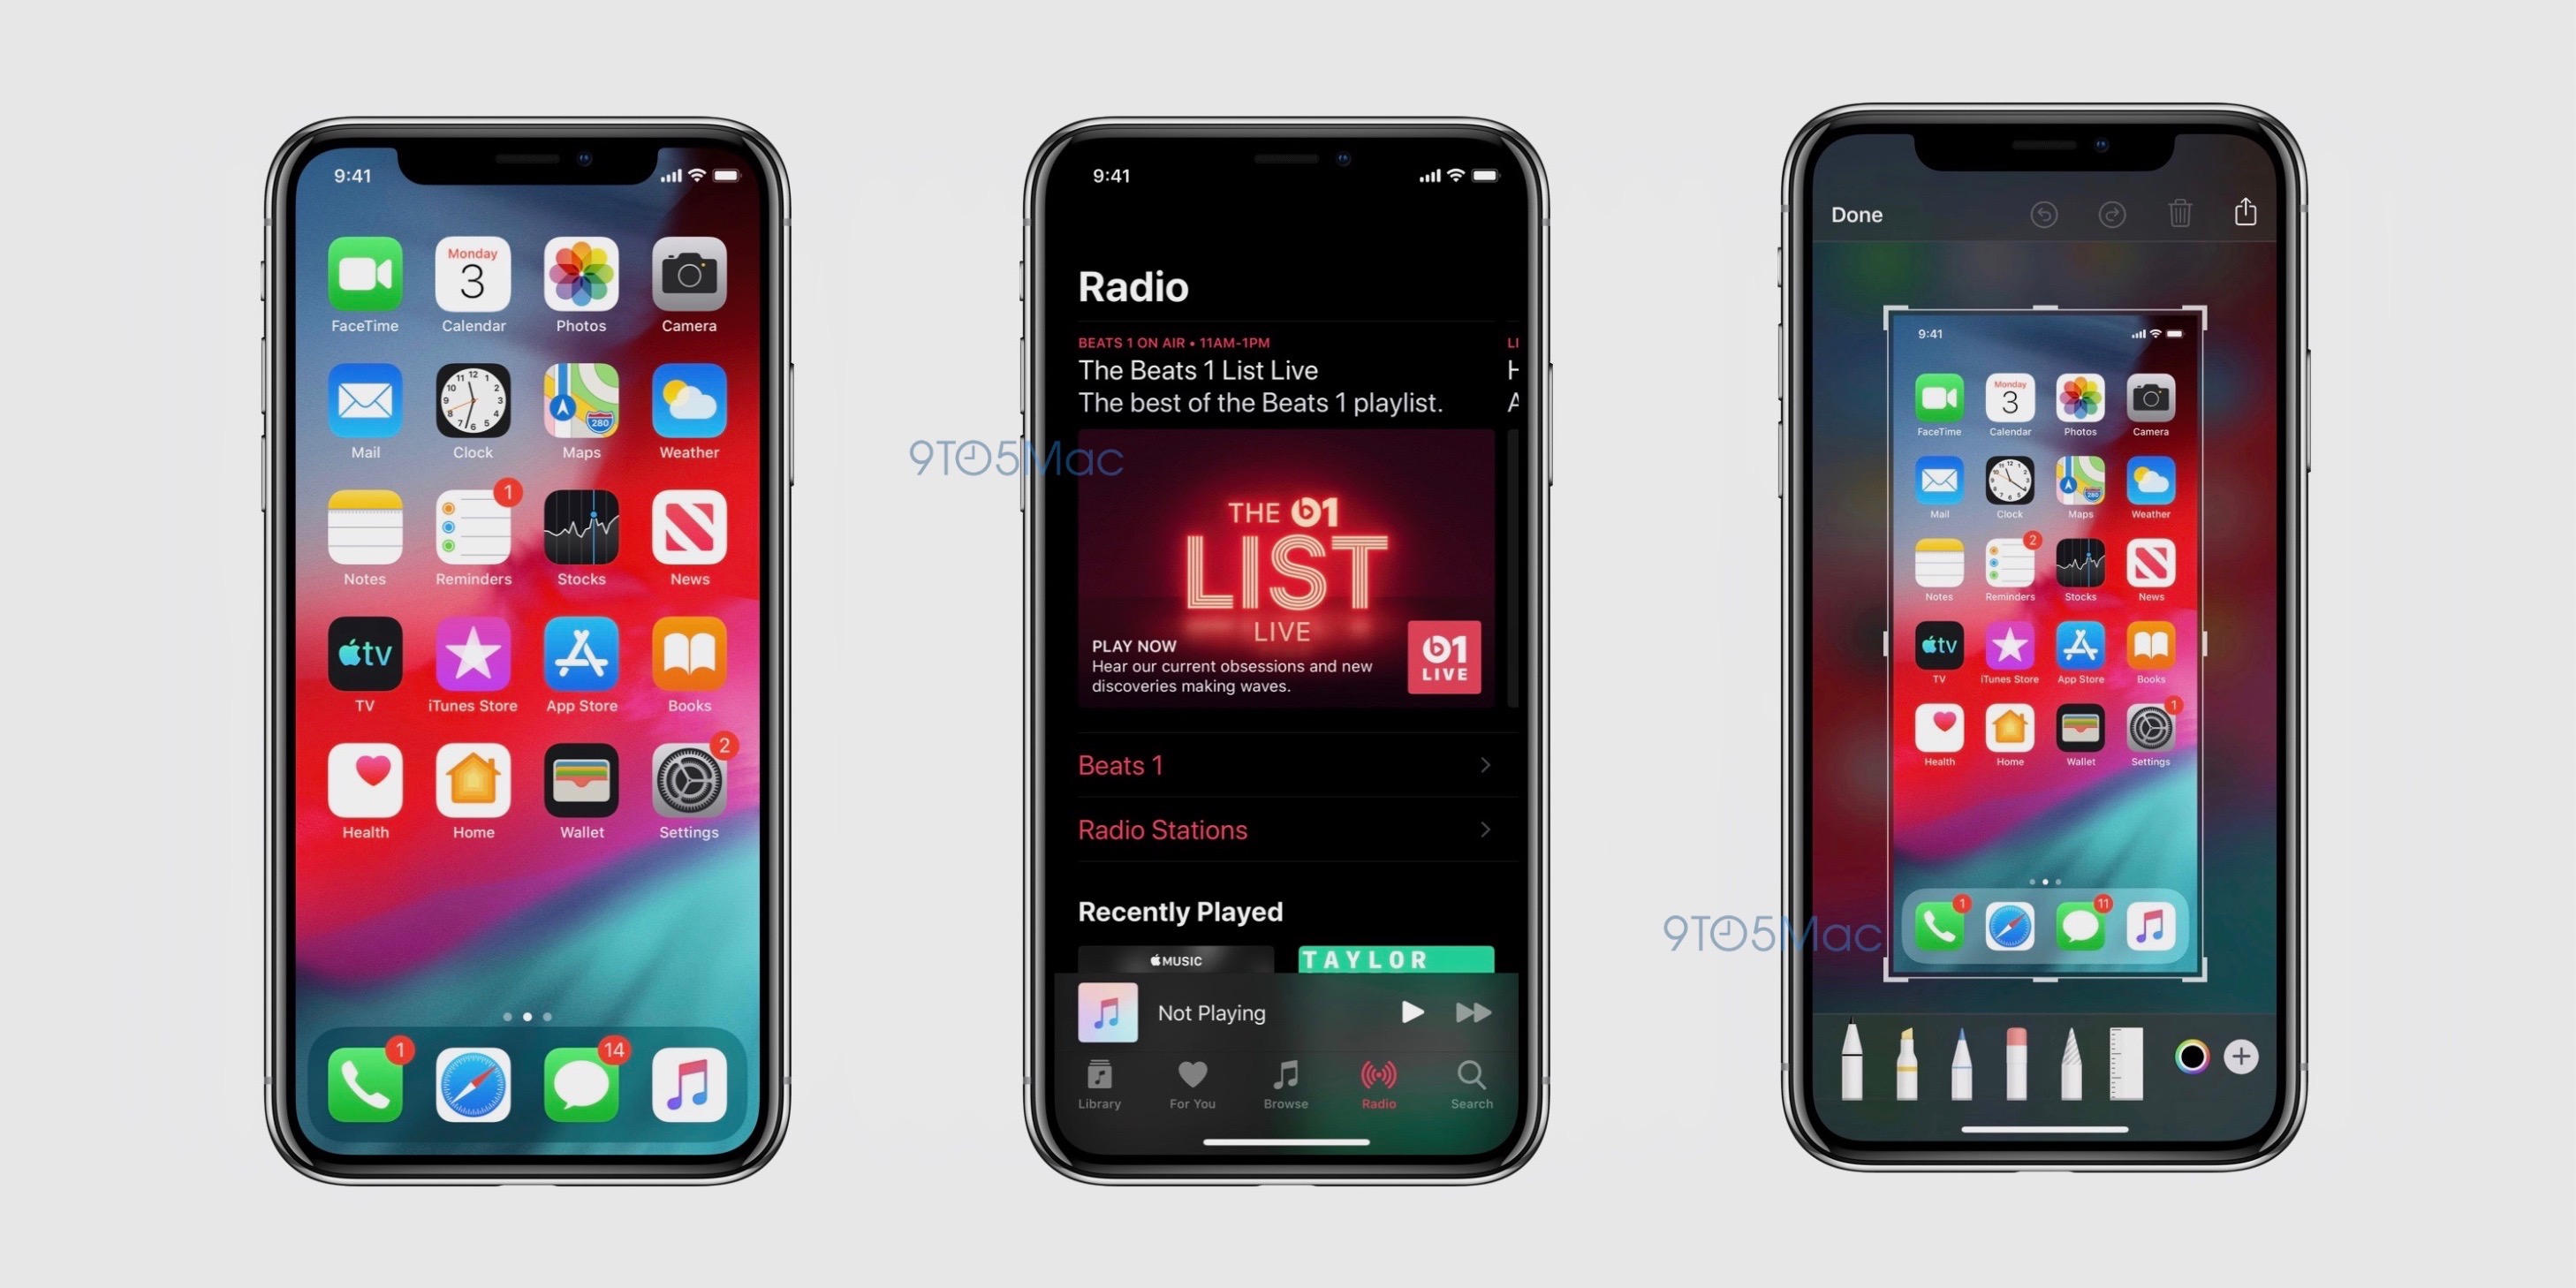 iOS 13 beta Apple iPhone kiedy WWDC 2019 nowości plotki przecieki wycieki zrzuty ekranowe